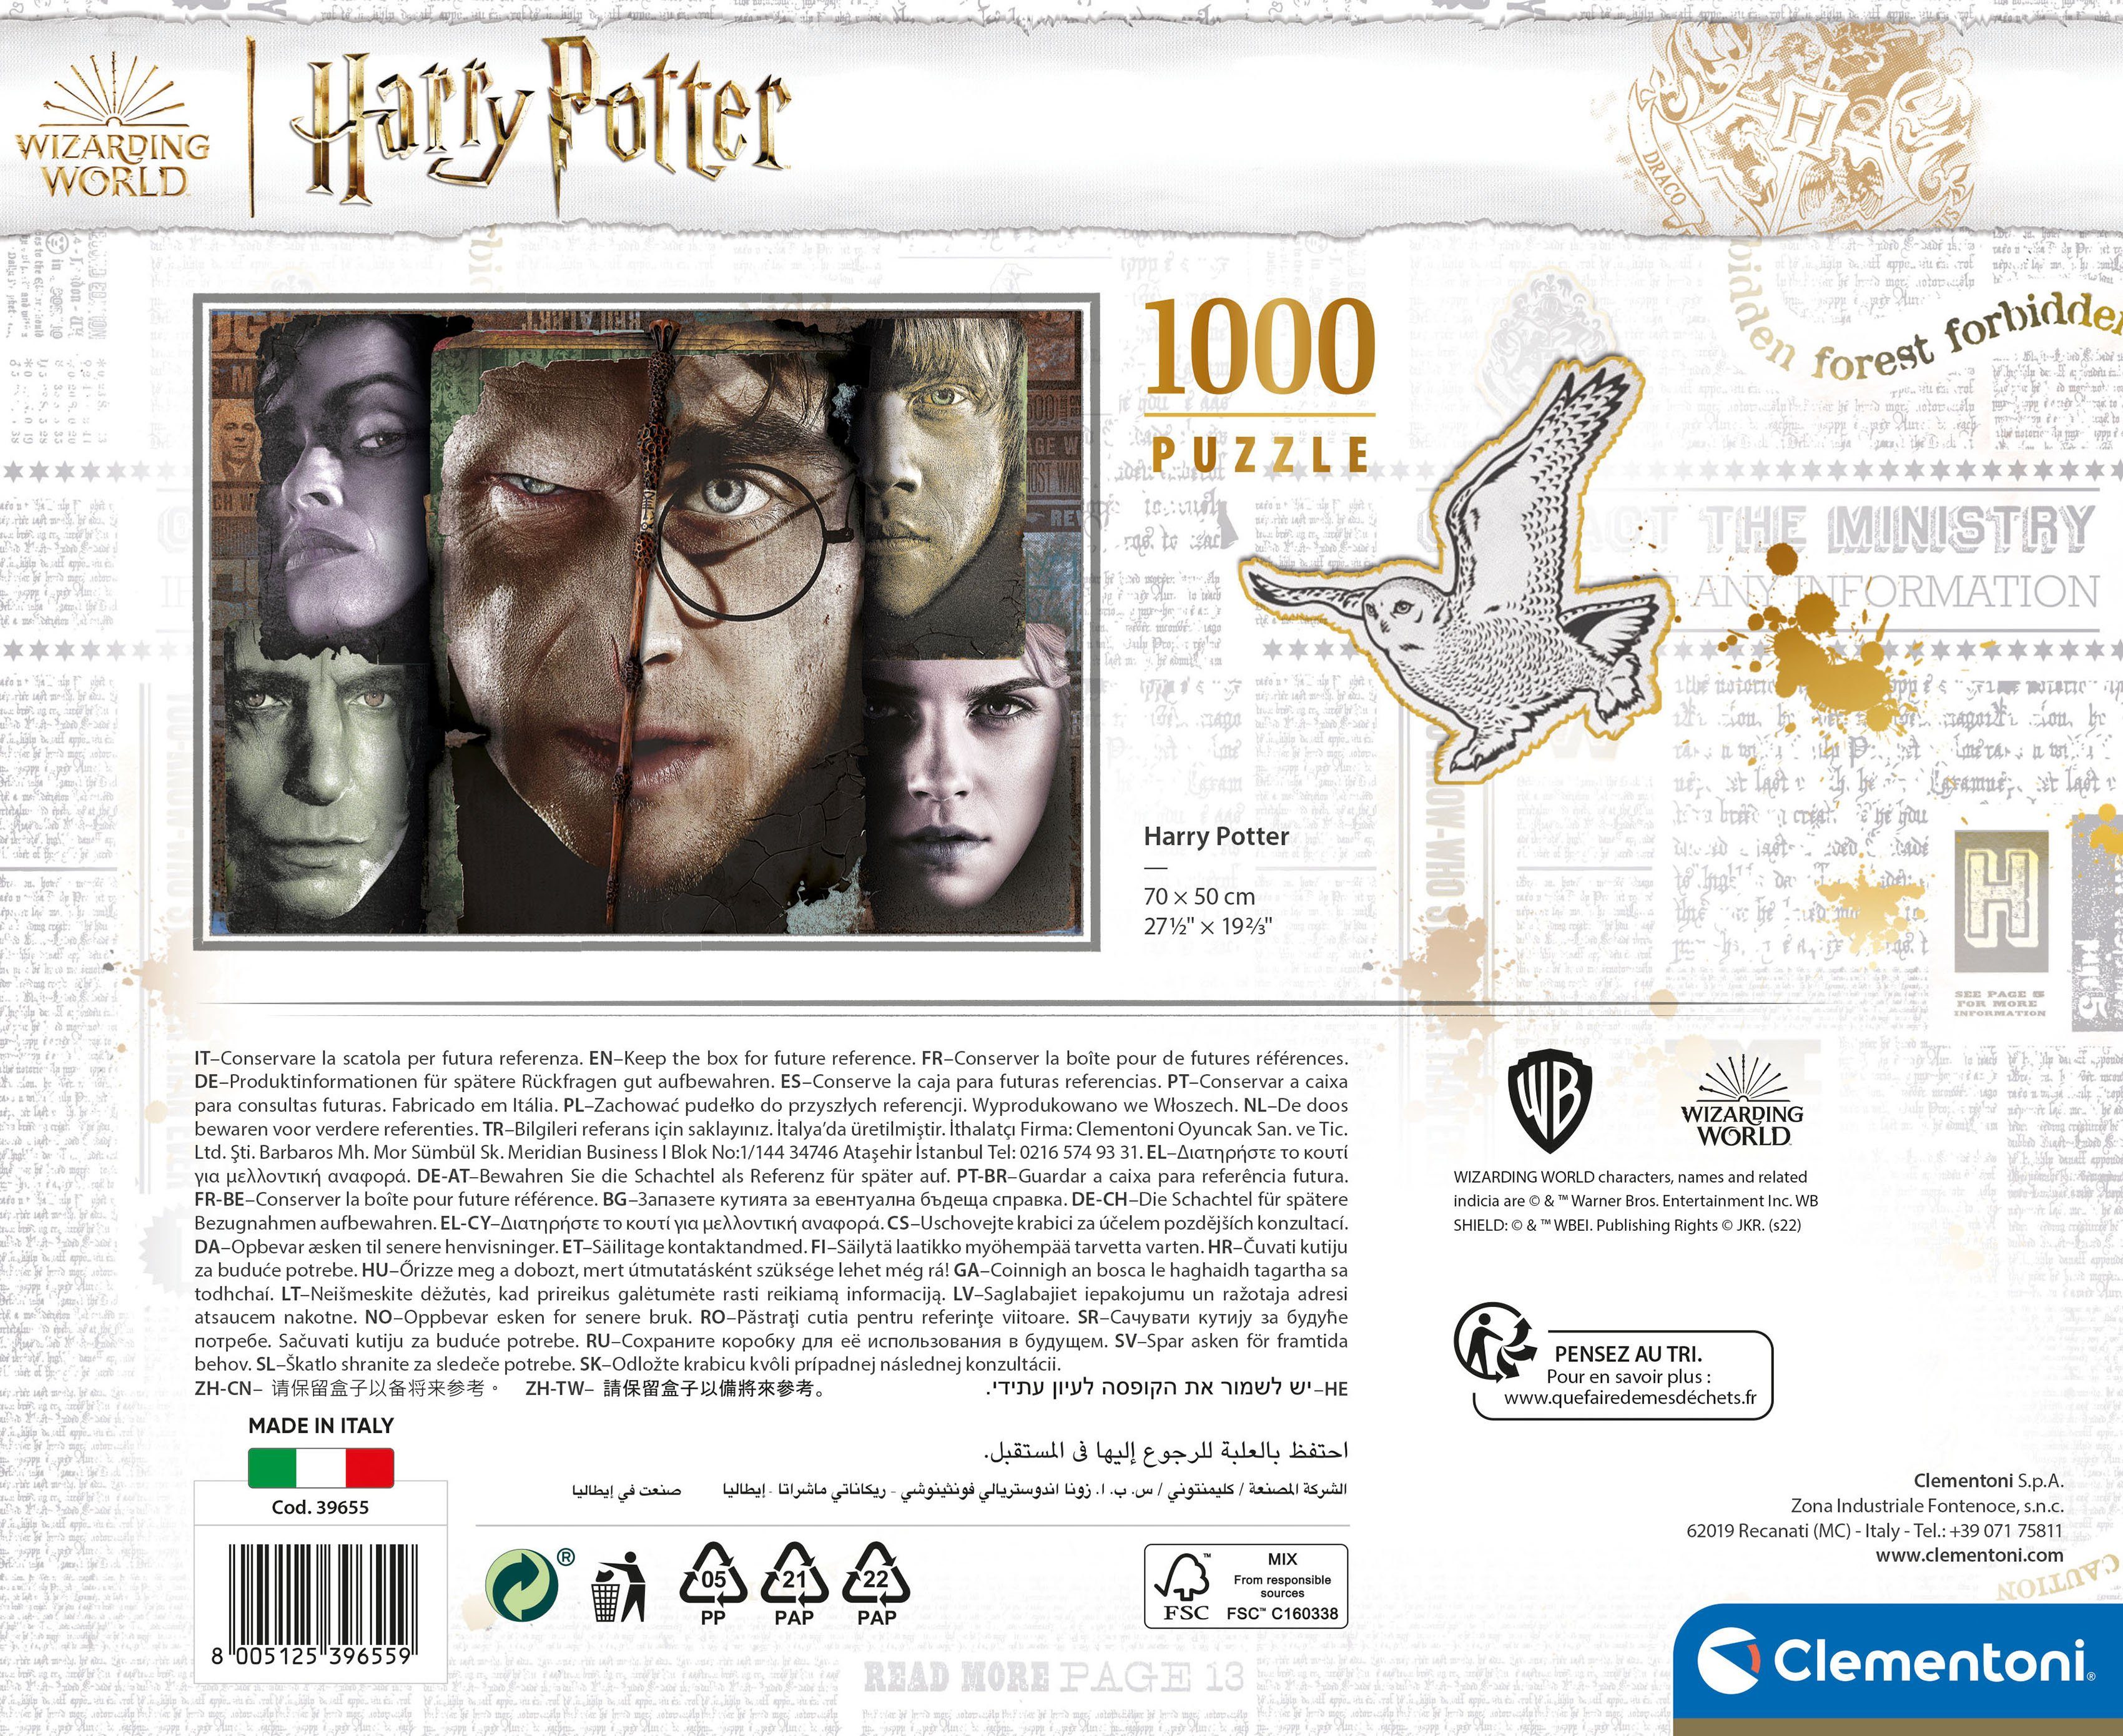 Puzzle schützt - Clementoni® weltweit Case - Wald World, Wizarding 1000 Made Harry Europe, Puzzleteile, Potter, in FSC®